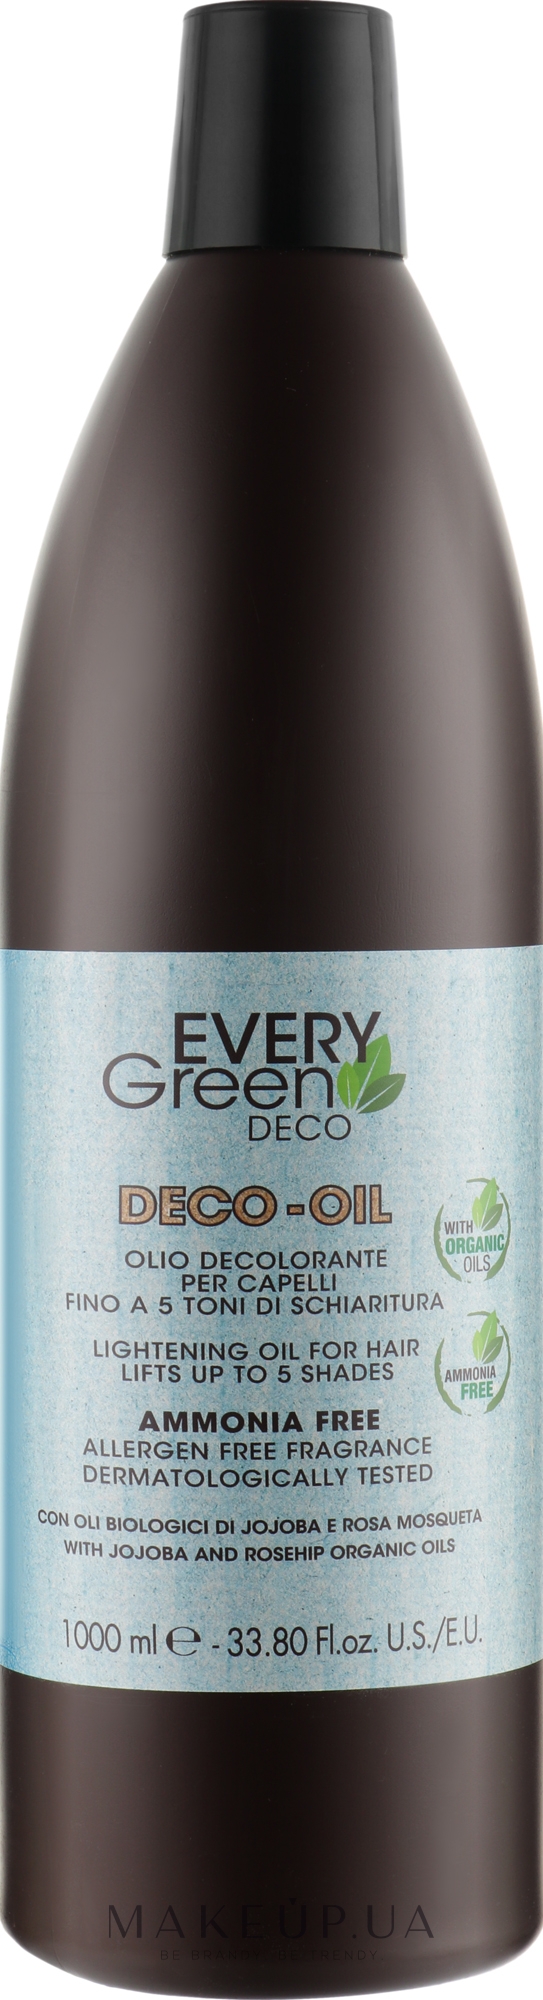 Освітлювальна олія для волосся з жожоба - Dikson Every Green Deco-Oil — фото 1000ml